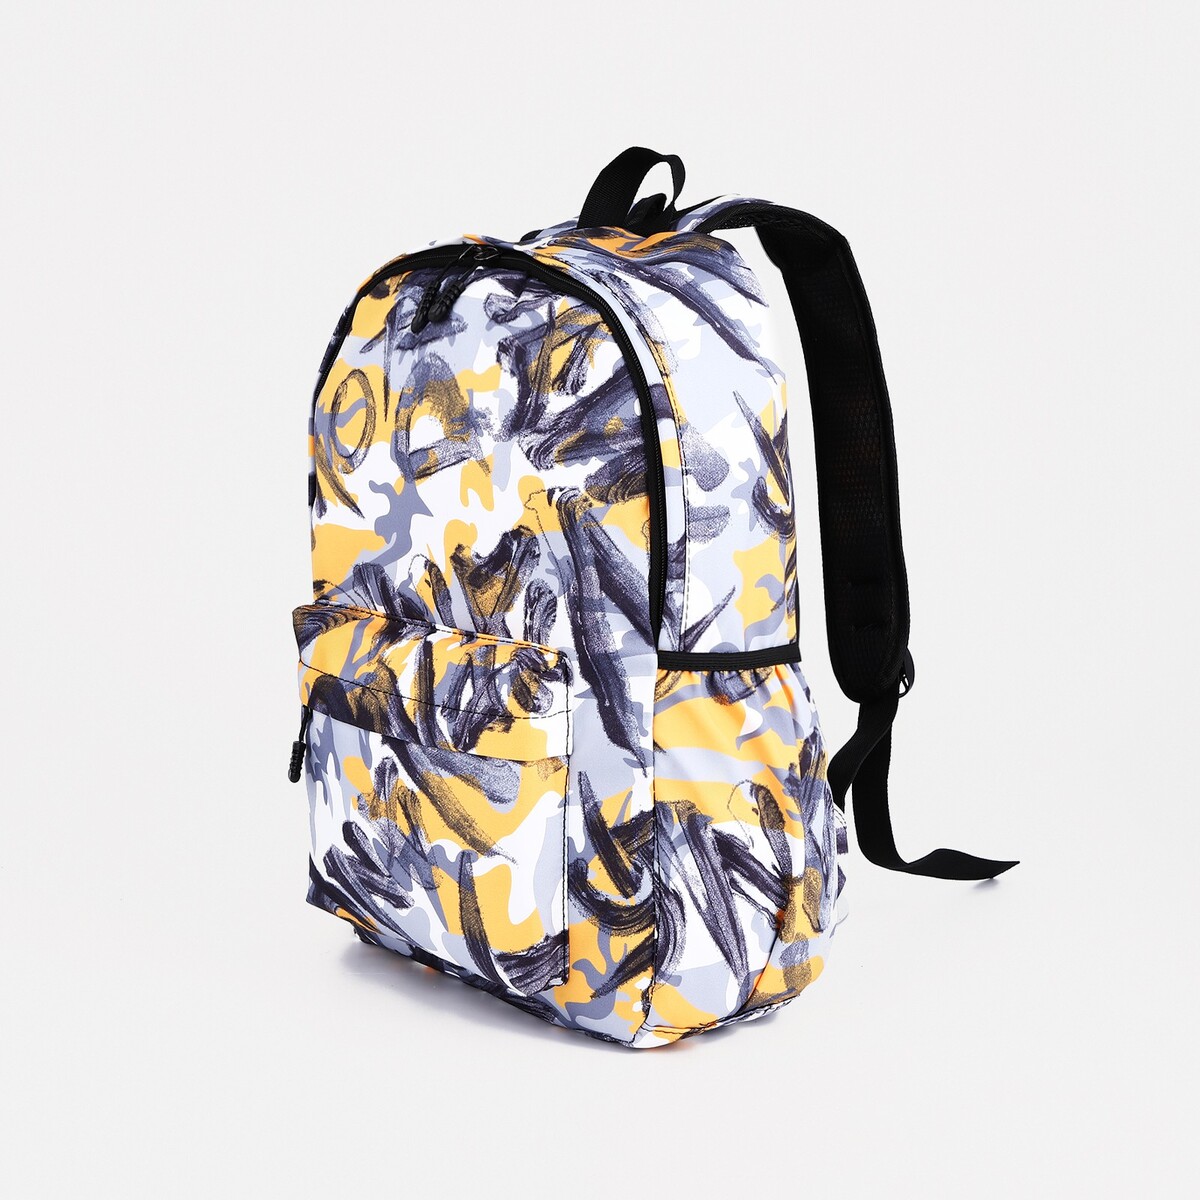 Рюкзак школьный из текстиля на молнии, 3 кармана, цвет желтый/серый